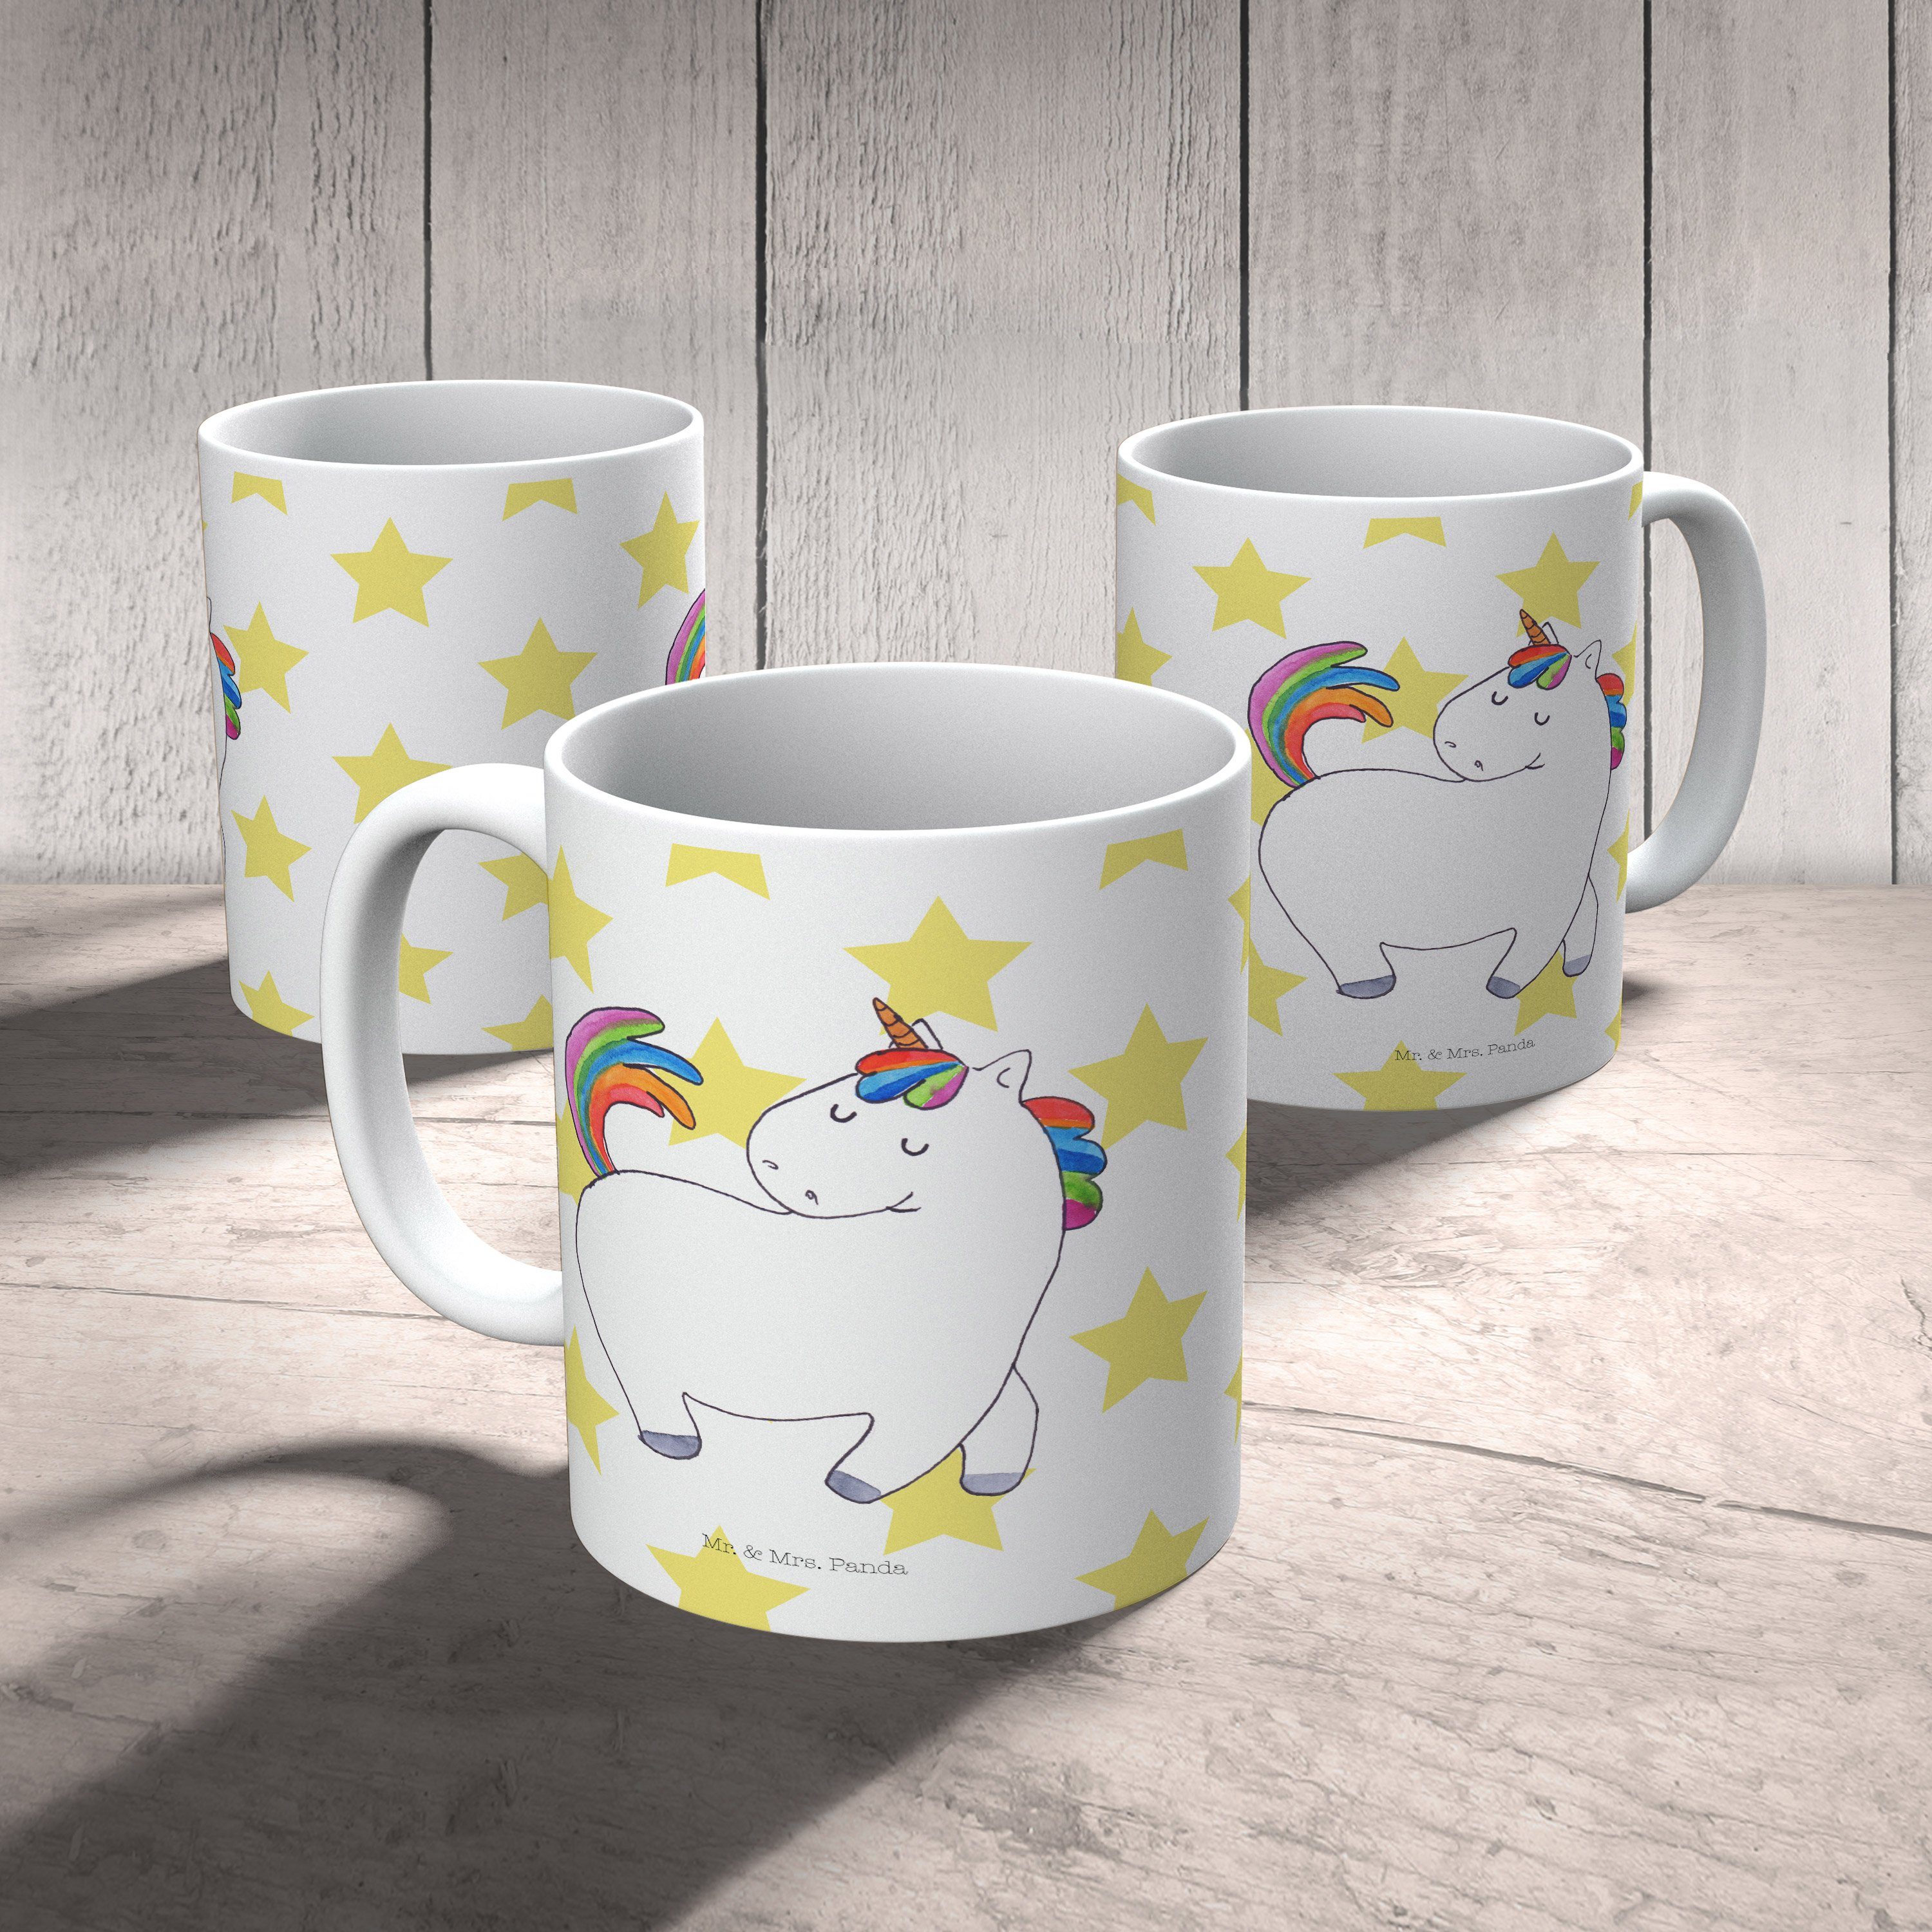 Mr. & Mrs. Panda stolzierend Kaffe, Teebecher, Kaffeebecher, - - Geschenk, Tasse Keramik Weiß Einhorn